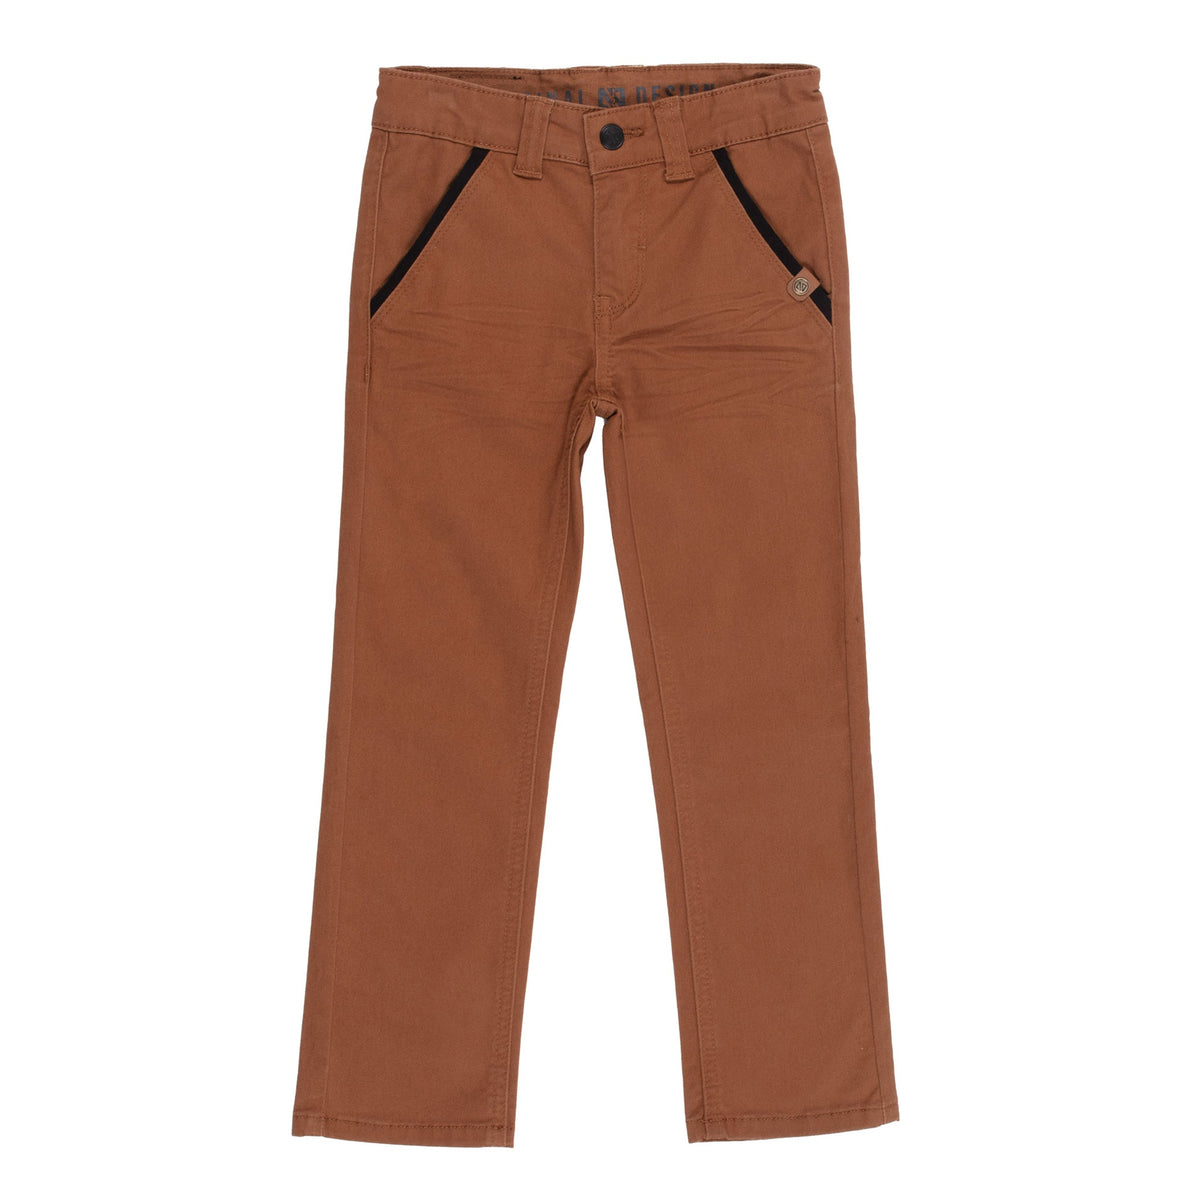 Pantalon pour enfant garçon par Nanö | F2225-04 Brun | Boutique Flos, vêtements mode pour bébés et enfants